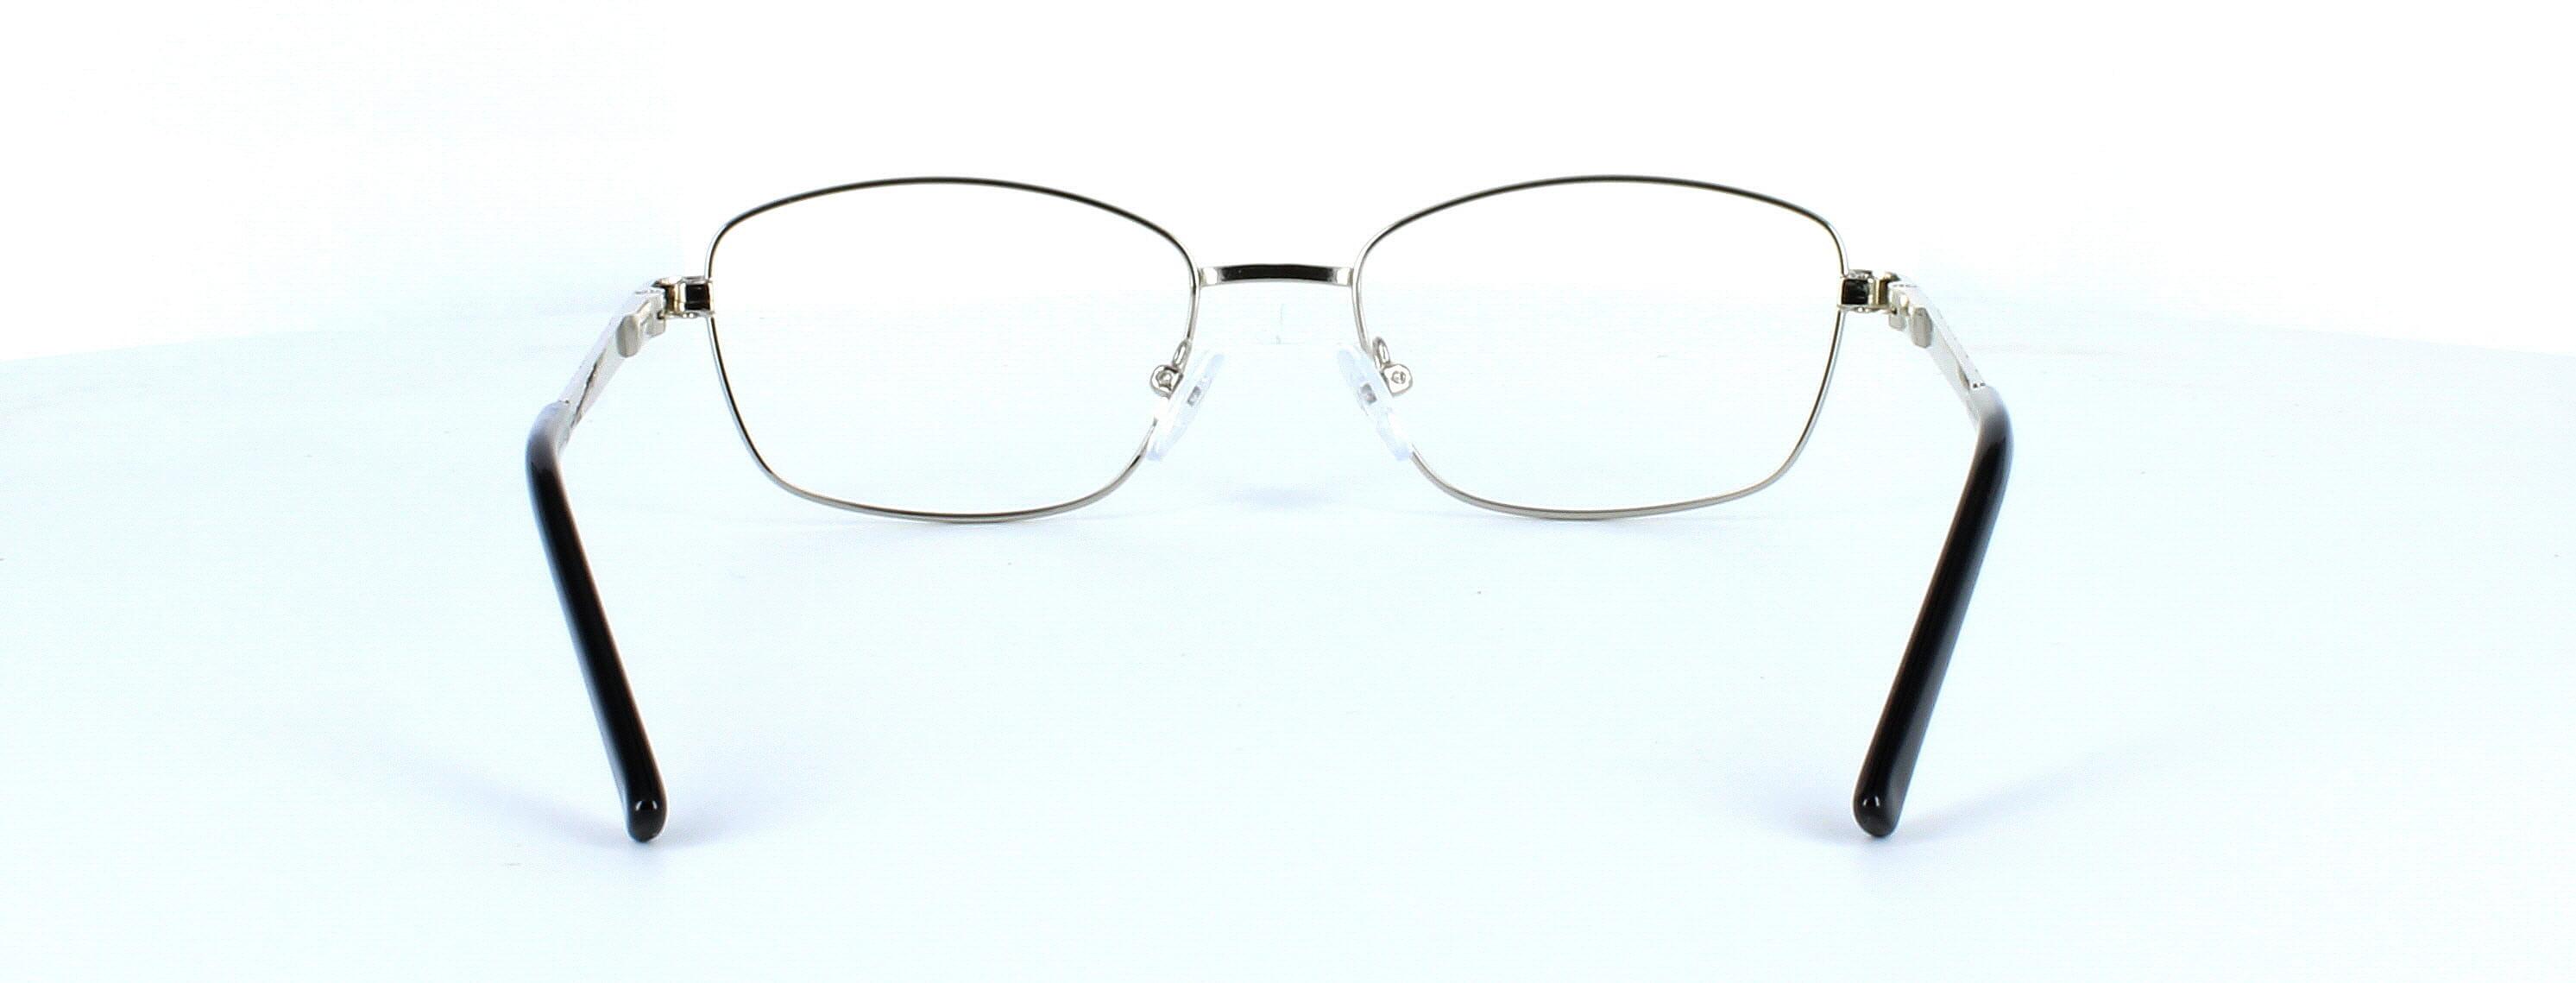 Sophia - Ladies silver metal glasses frame - image view 3